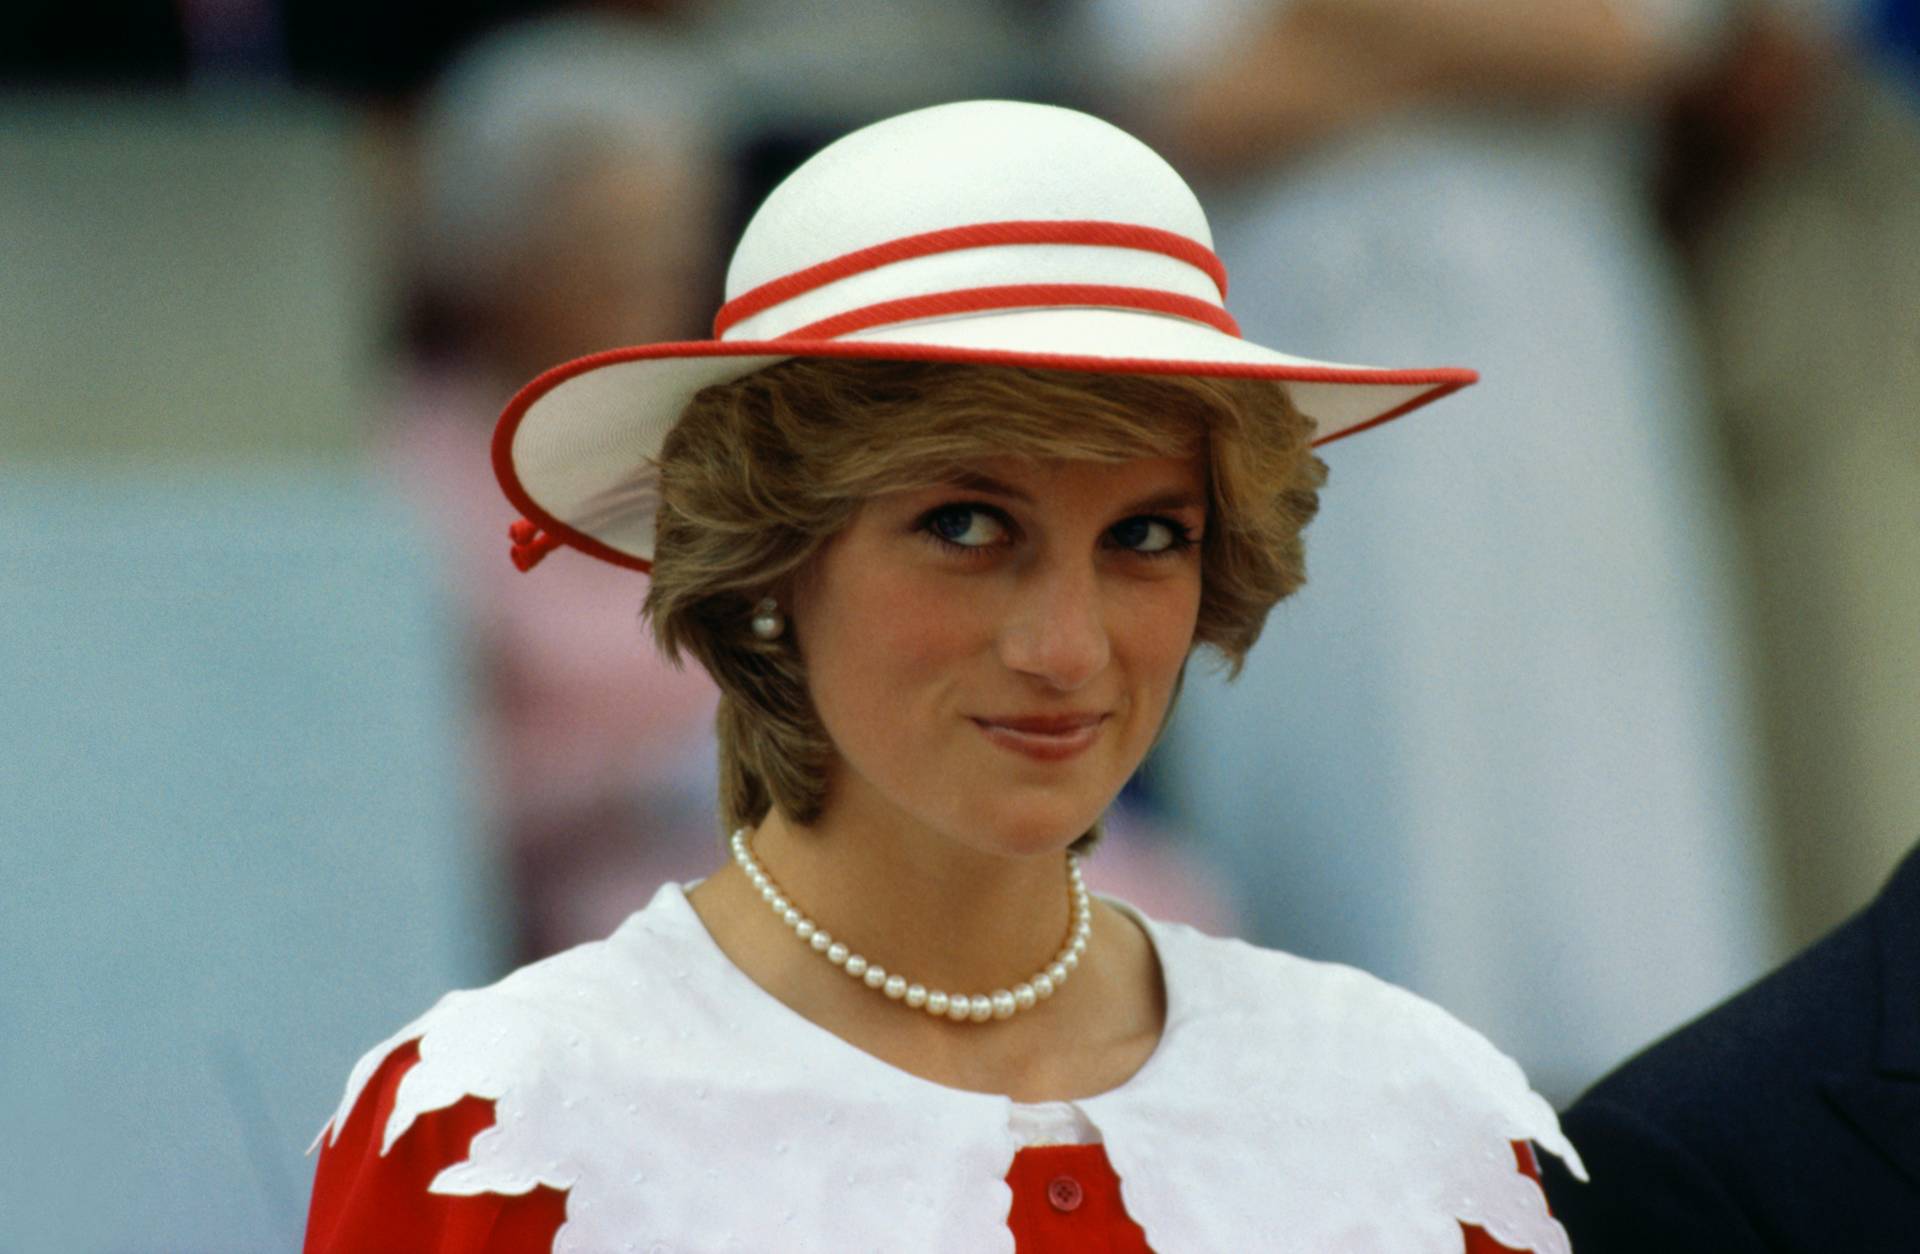 Diana hercegnő és Charlotte hercegnő közti hasonlóság